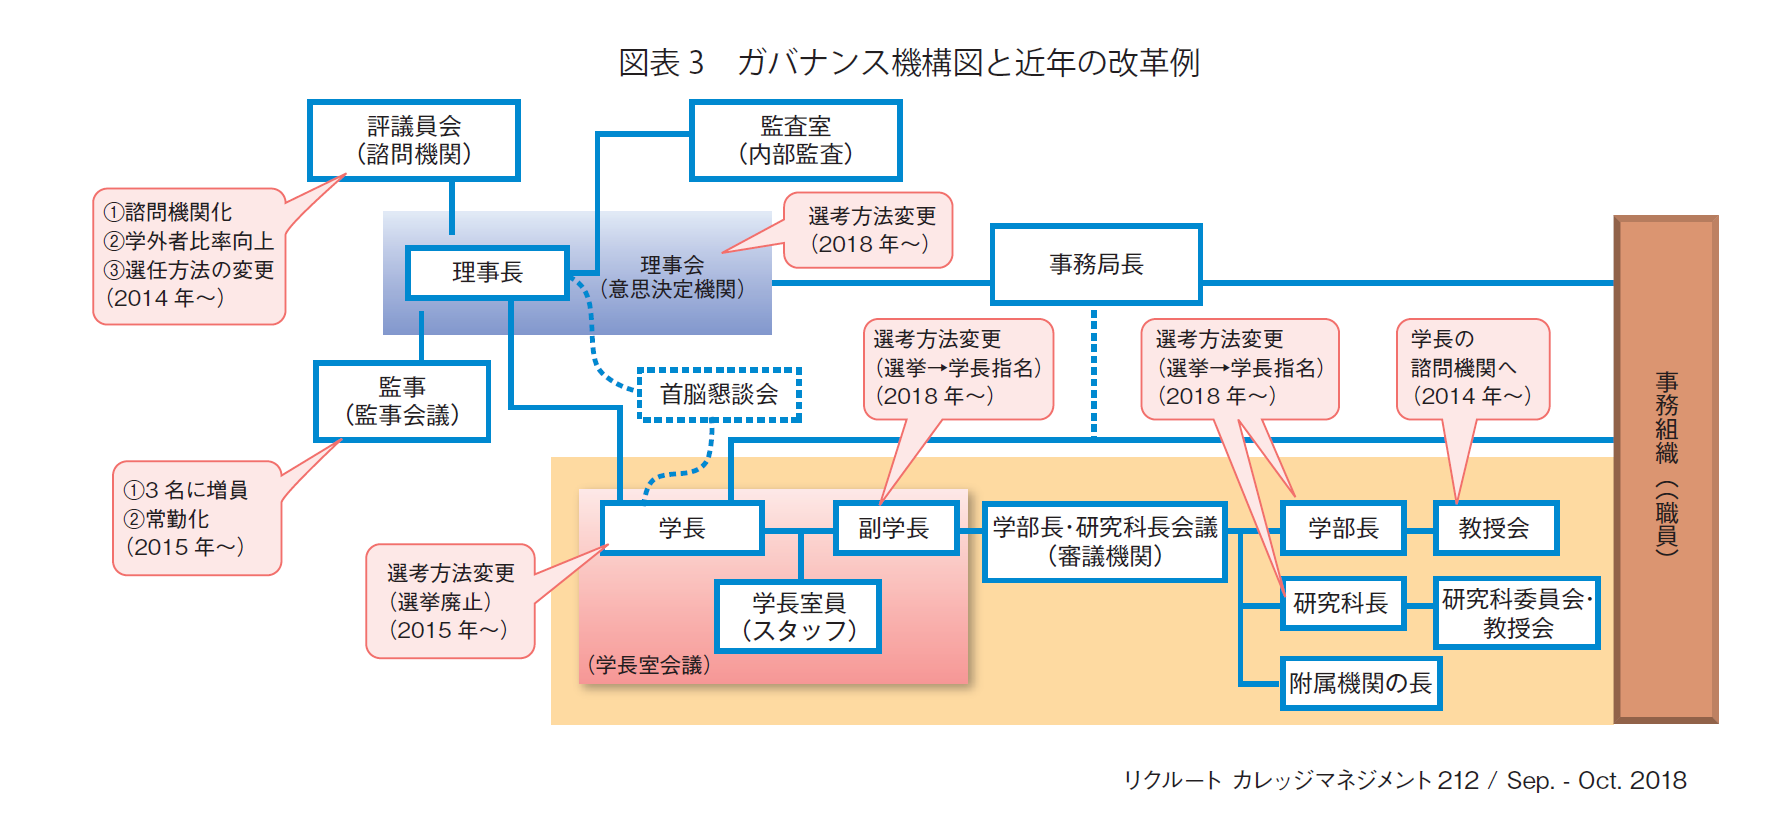 図表3 ガバナンス機構図と近年の改革例